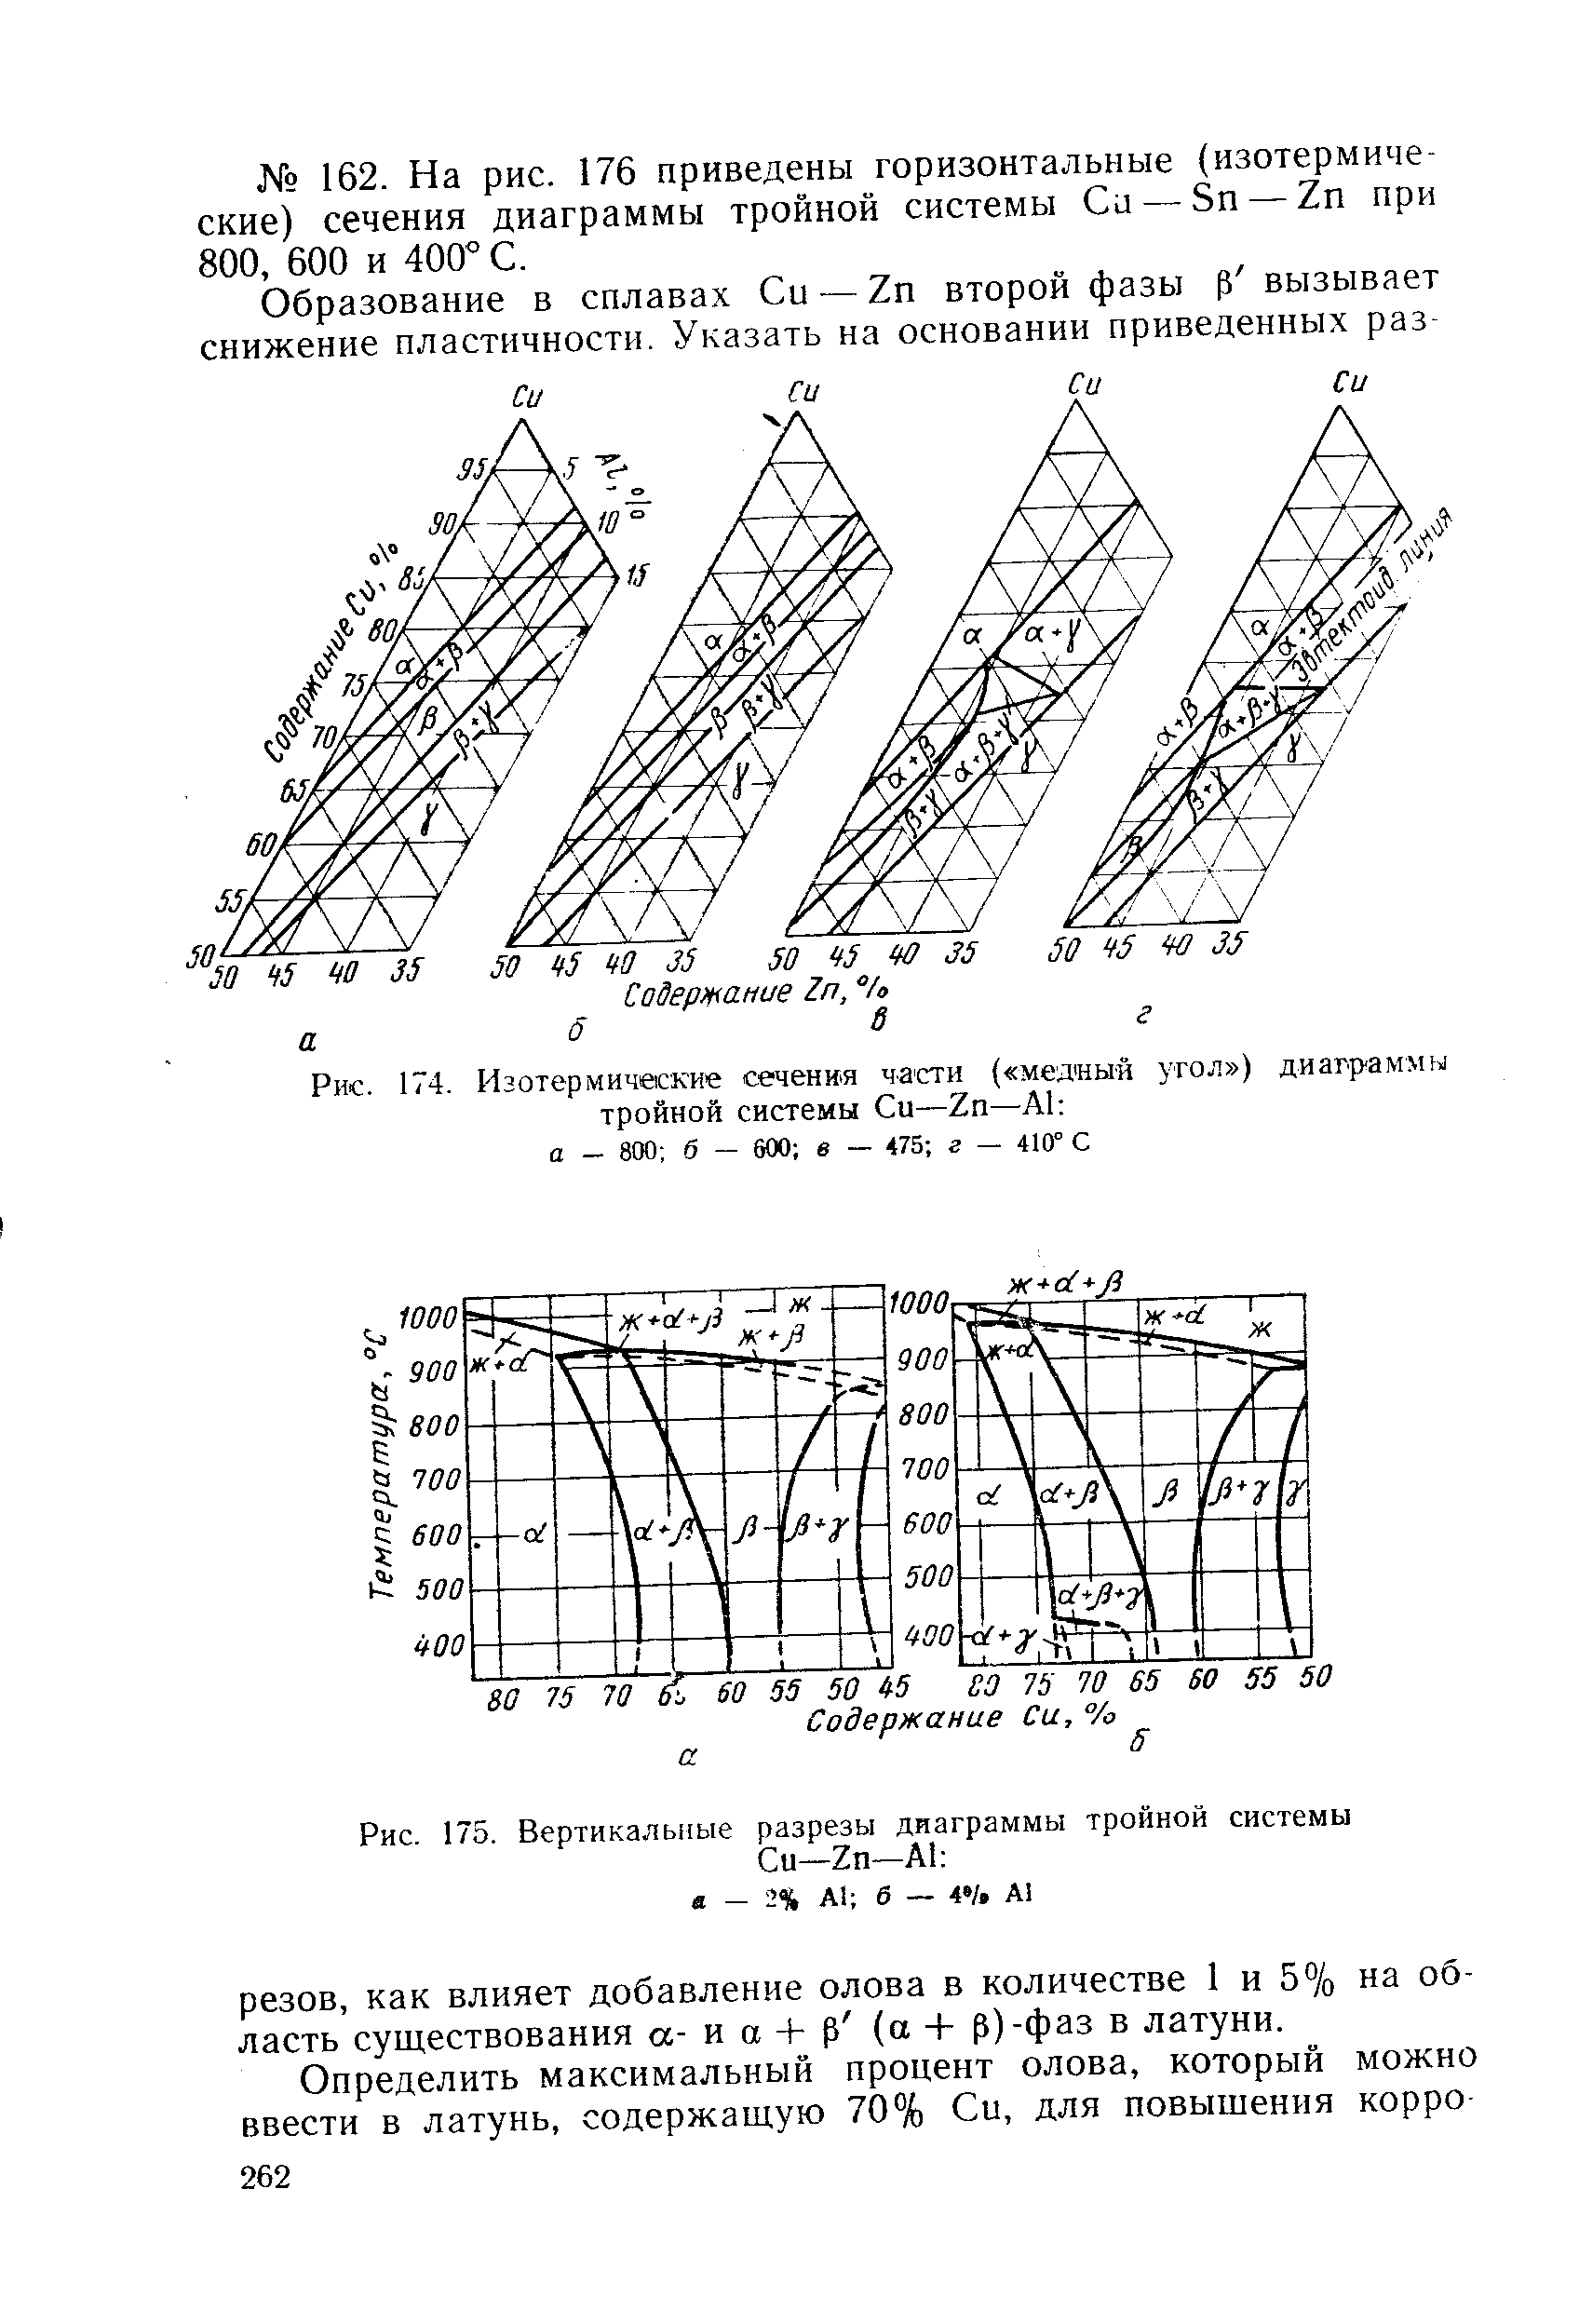 Рис. 174. Изотермические сечения части ( мея ныя угол ) диаграммы тройной системы Си—2п—А1 а - 800 б — 600 в — 475 г — 410° С
